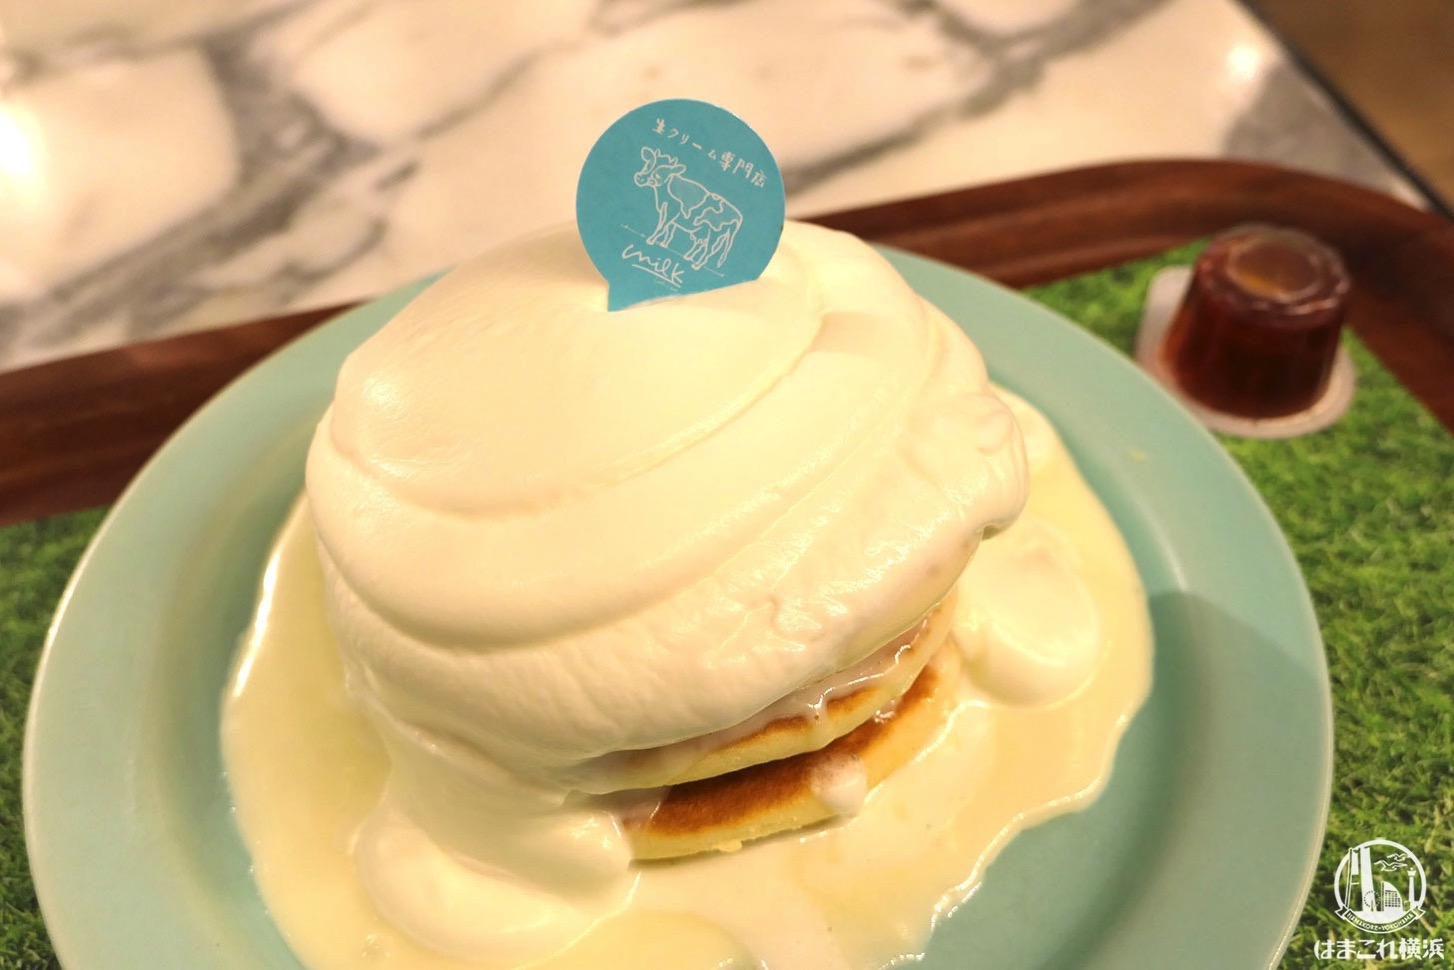 生クリーム専門店「ミルク」のパンケーキ、横浜みなとみらいで初体験！午後におすすめのカフェ